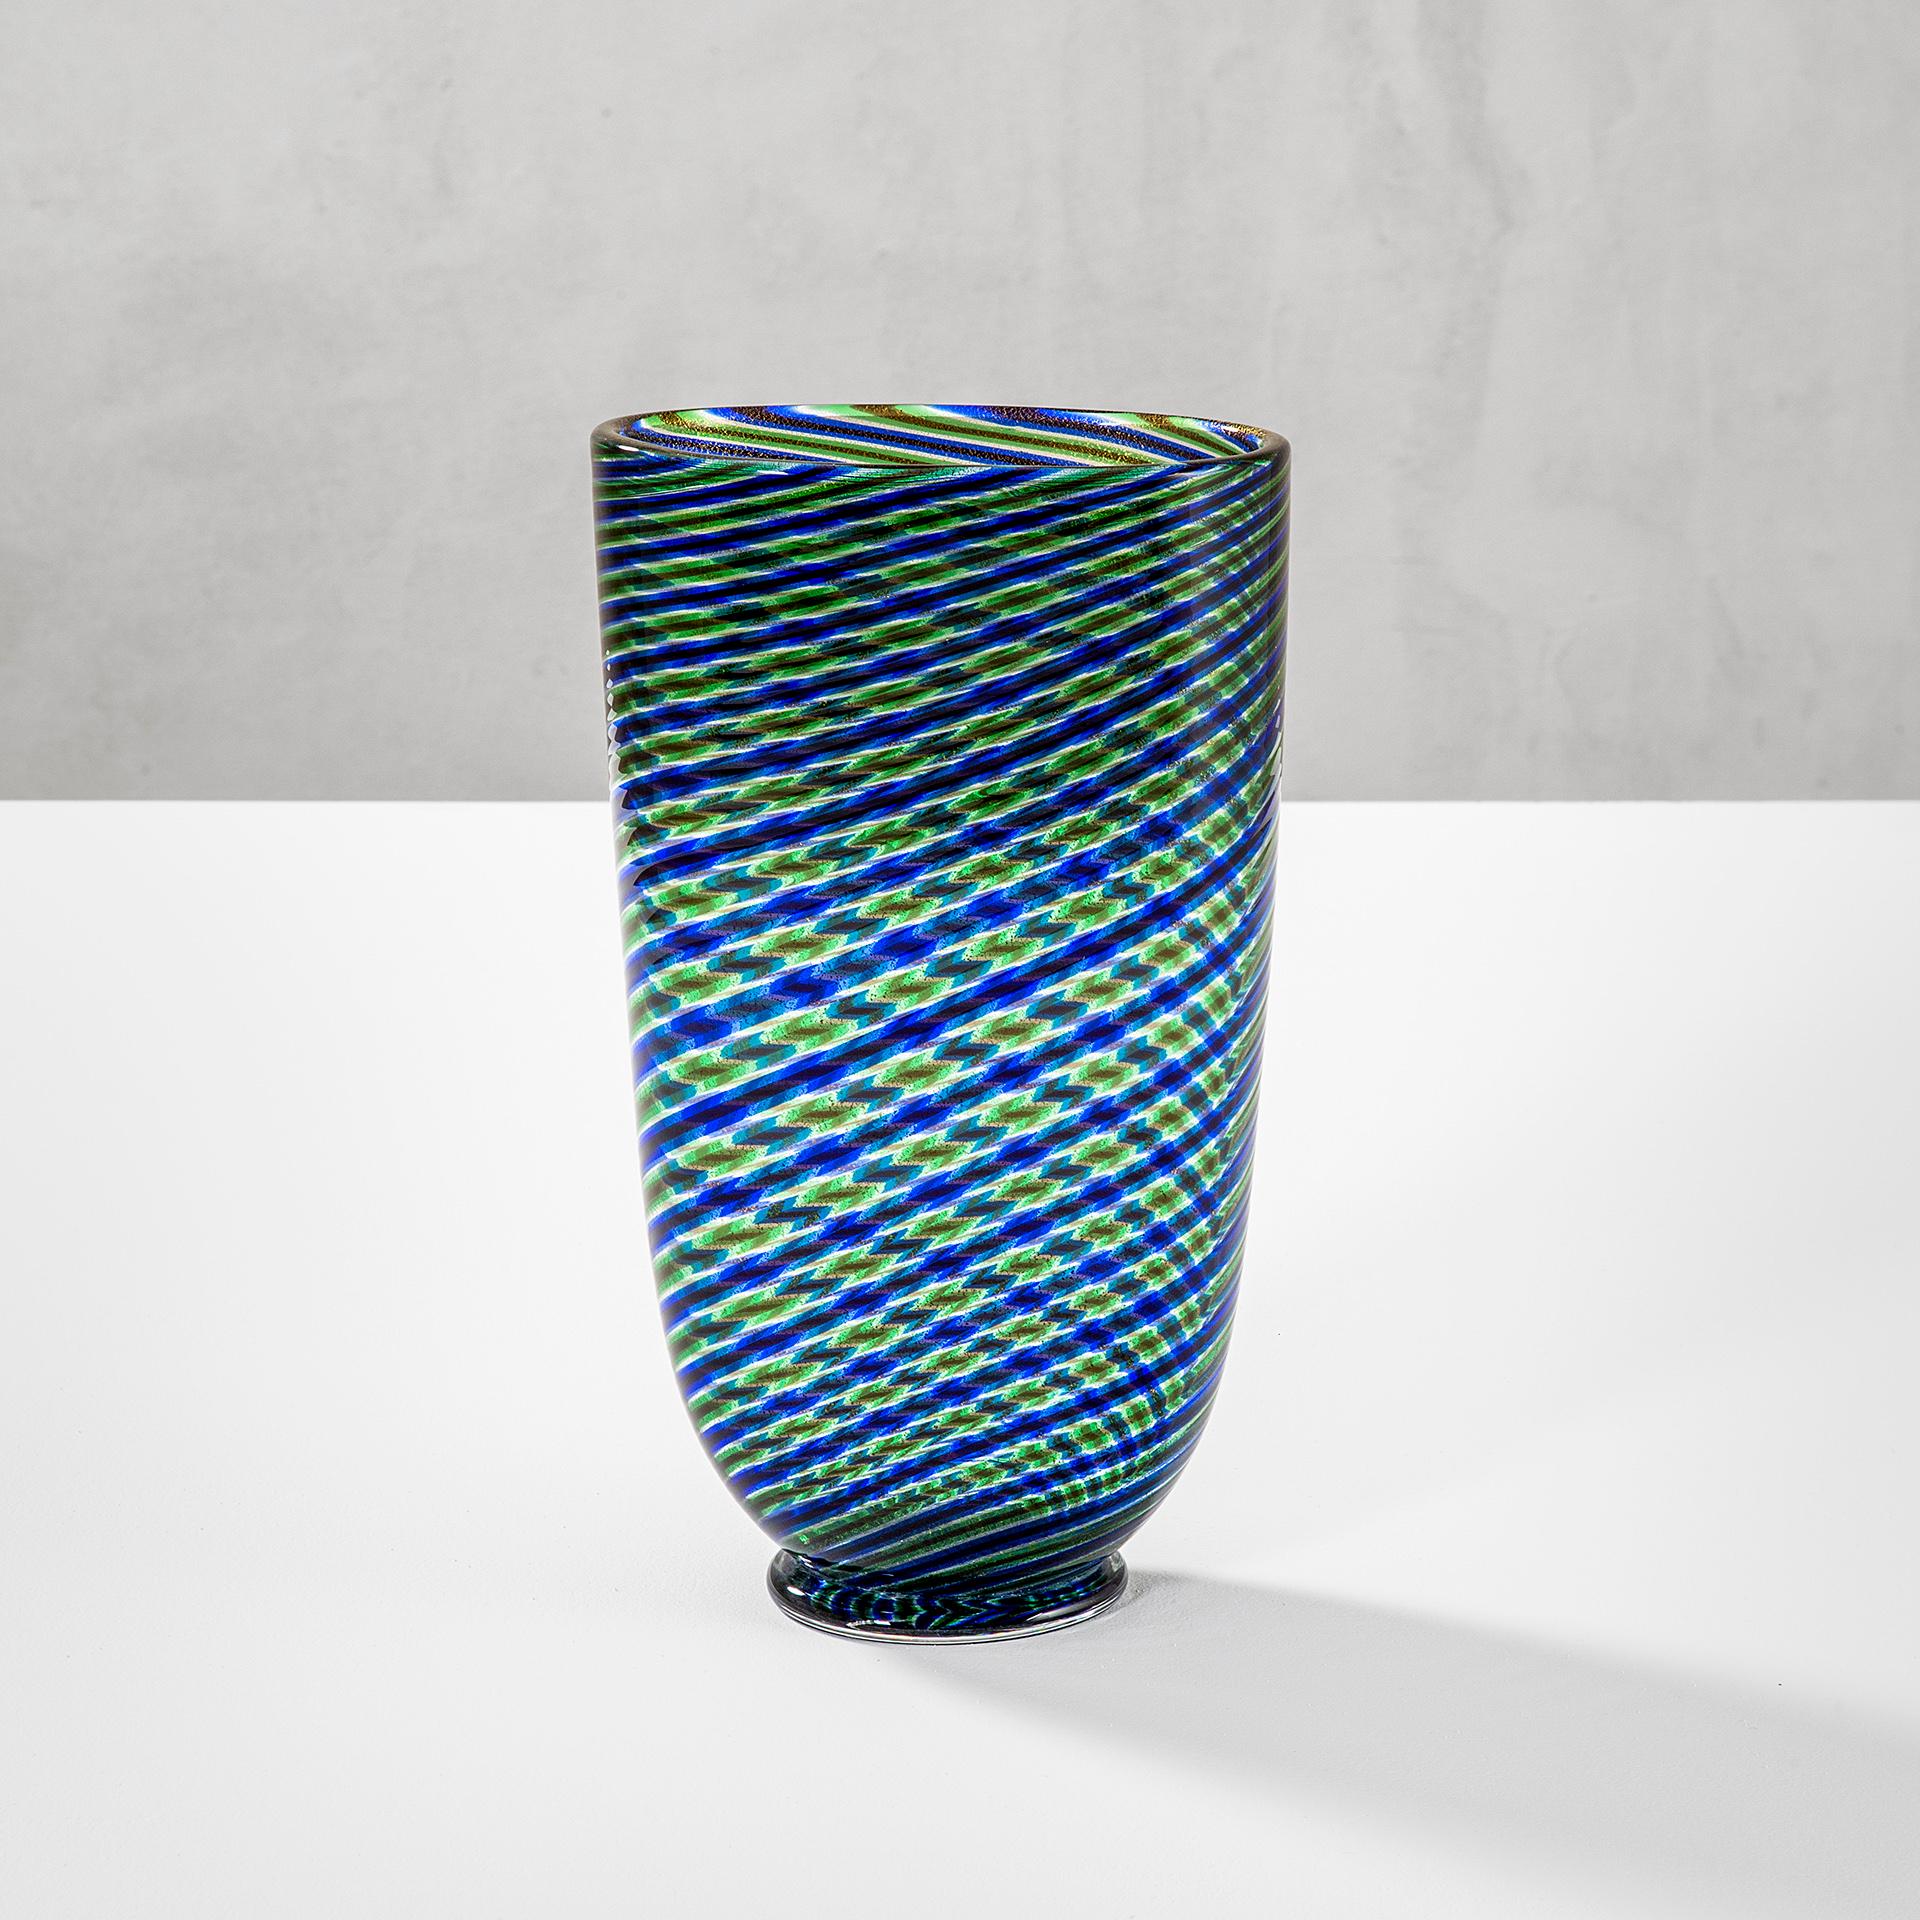 Magnifique vase conçu dans les années 60 par l'un des plus importants fabricants Barovier & Toso, expert de l'art du verre de Murano. 
Le vase a une forme cilindrique, et il a un décor spécial appelé en italien 